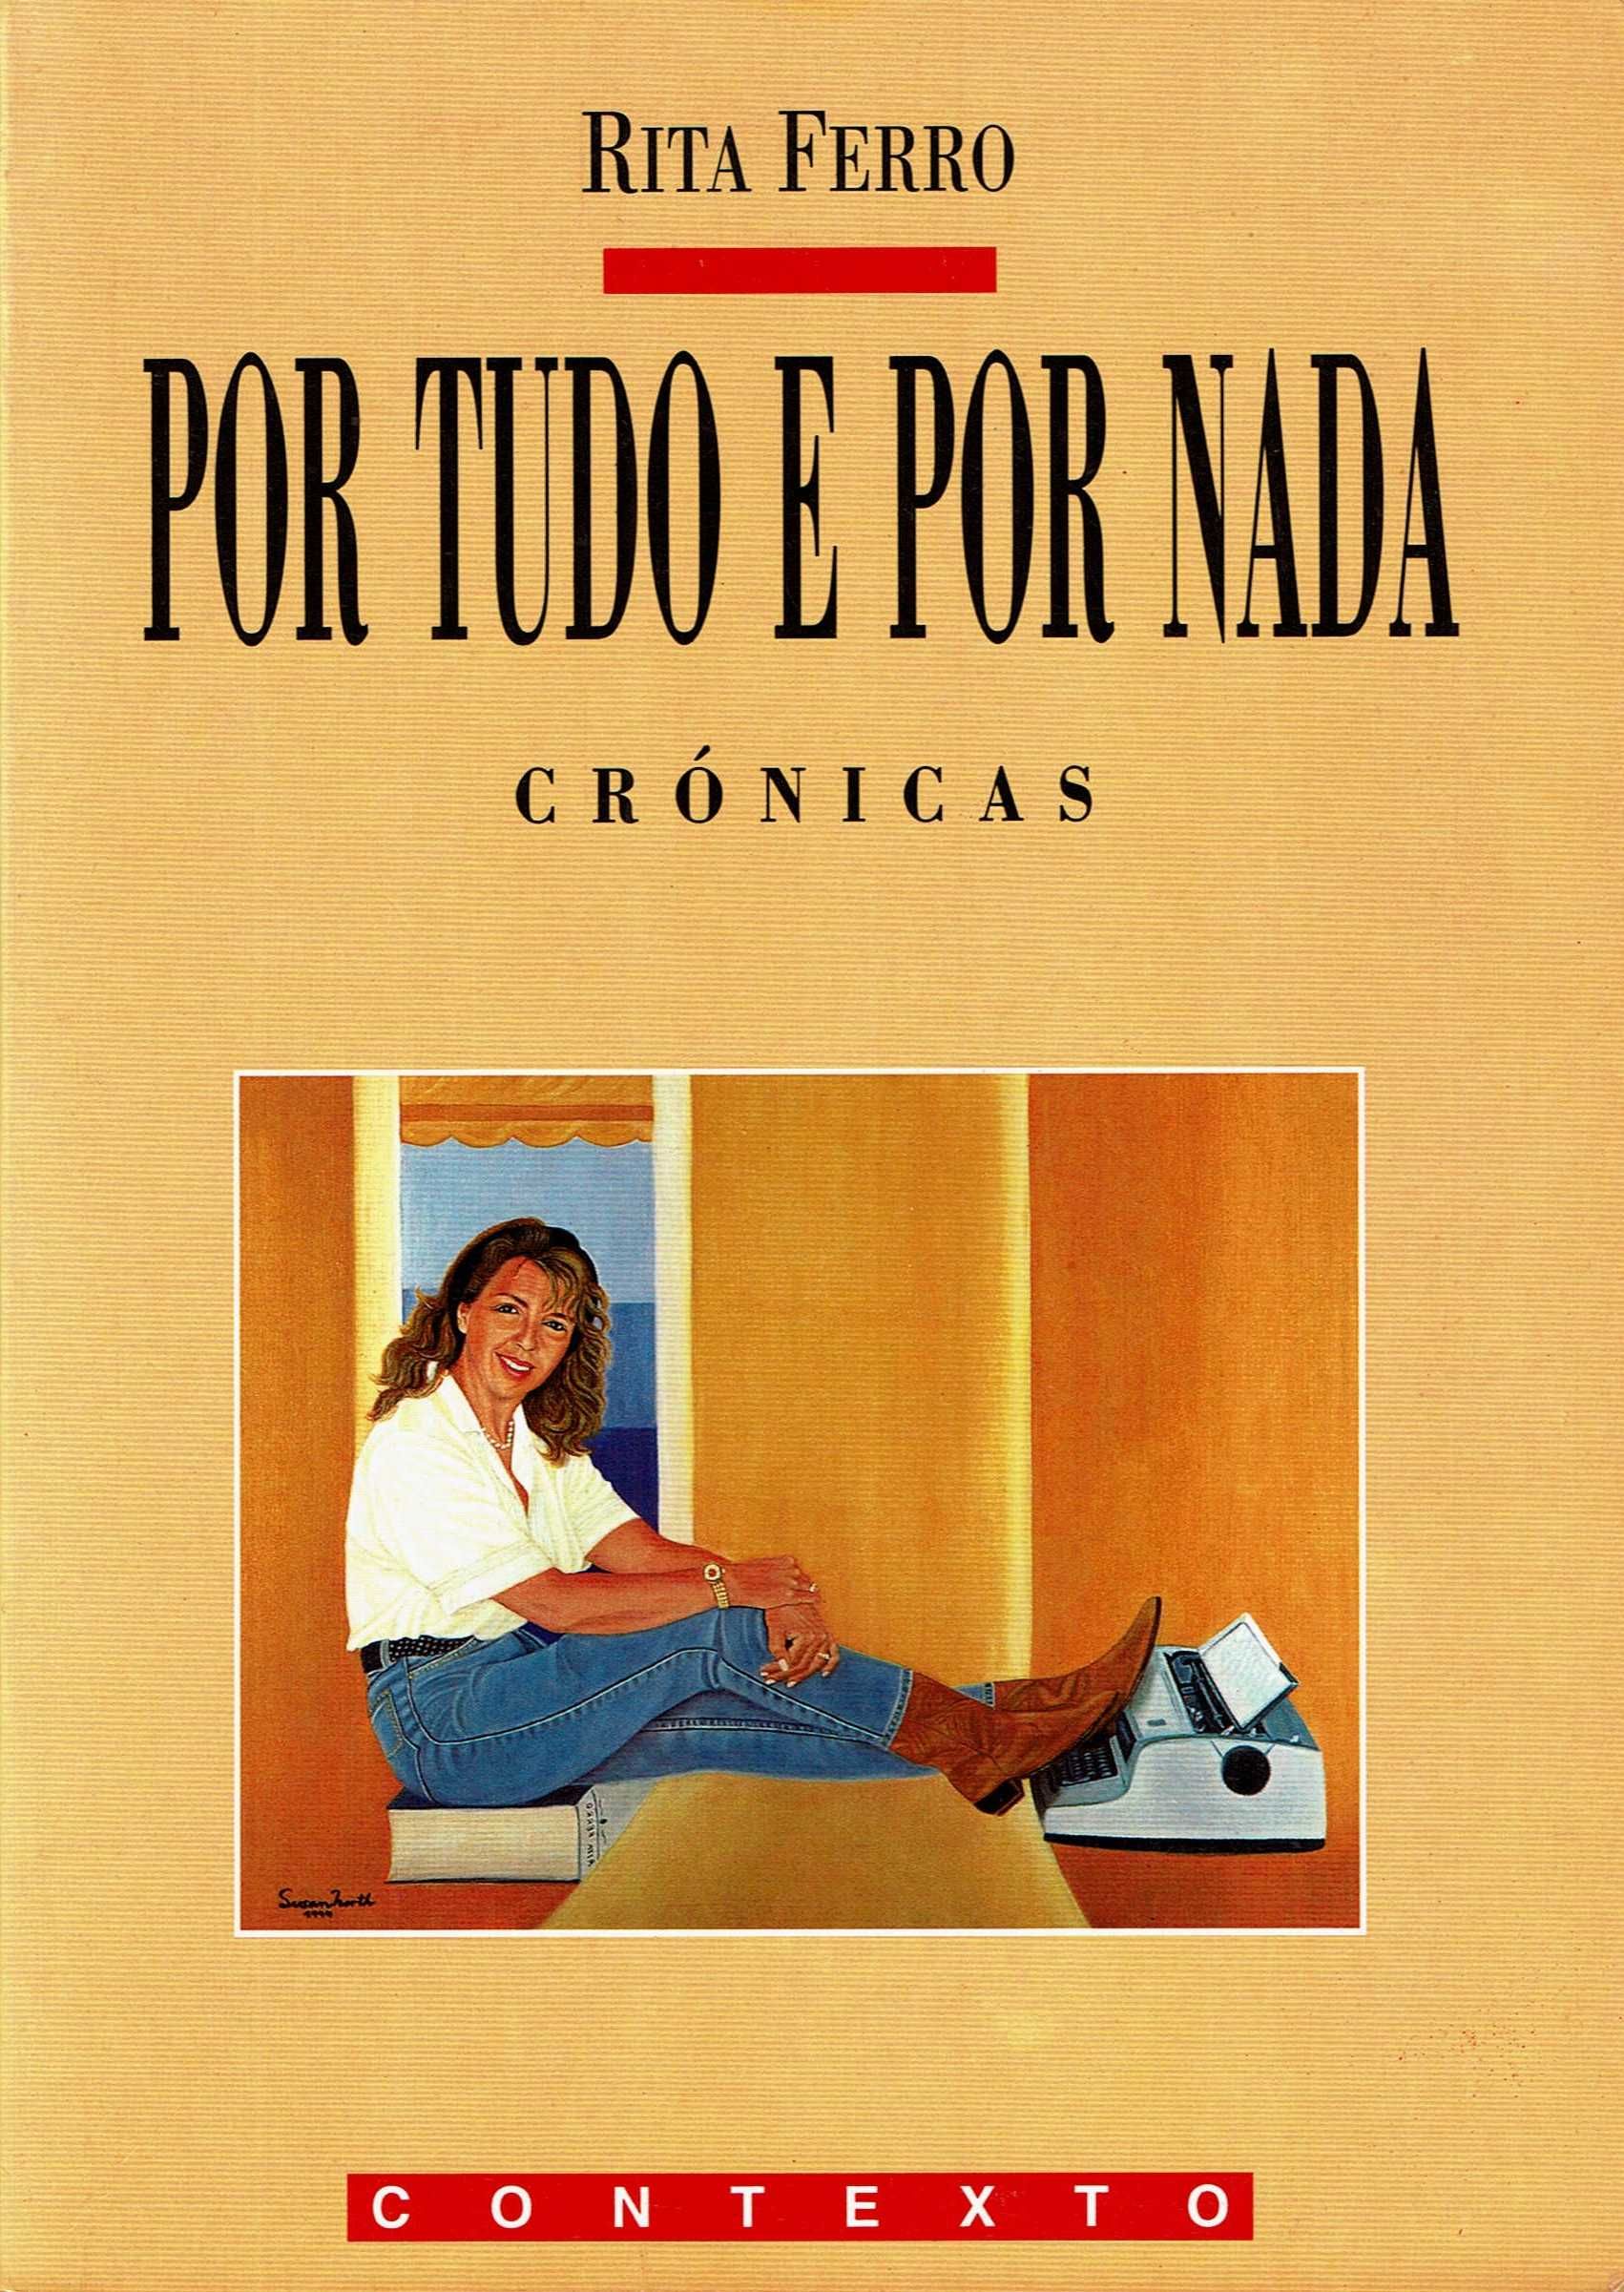 "Por tudo e por nada - crónicas" - Rita Ferro